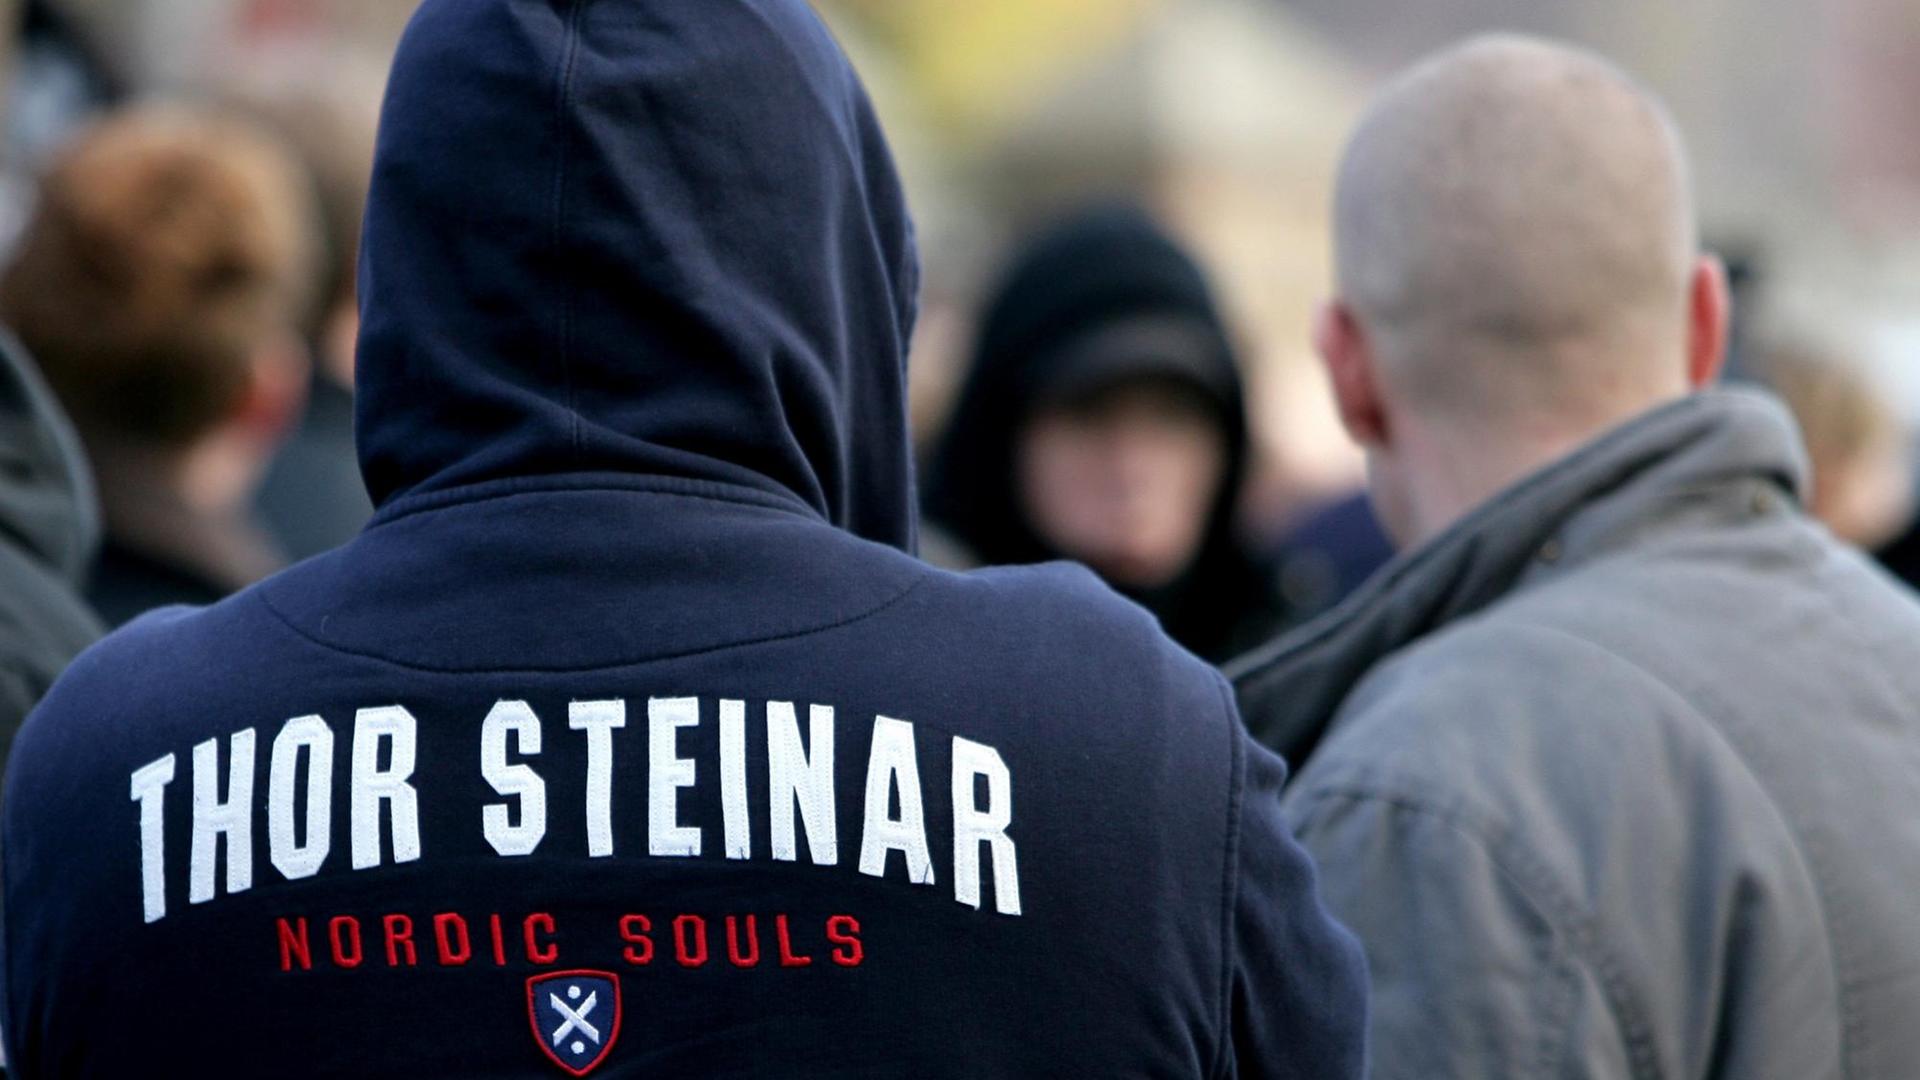 Ein Teilnehmer eines Neonazi-Aufmarsches im brandenburgischen Seelow trägt ein Kapuzen-Shirt der Modemarke Thor Steinar, aufgenommen am 18.11.2006.